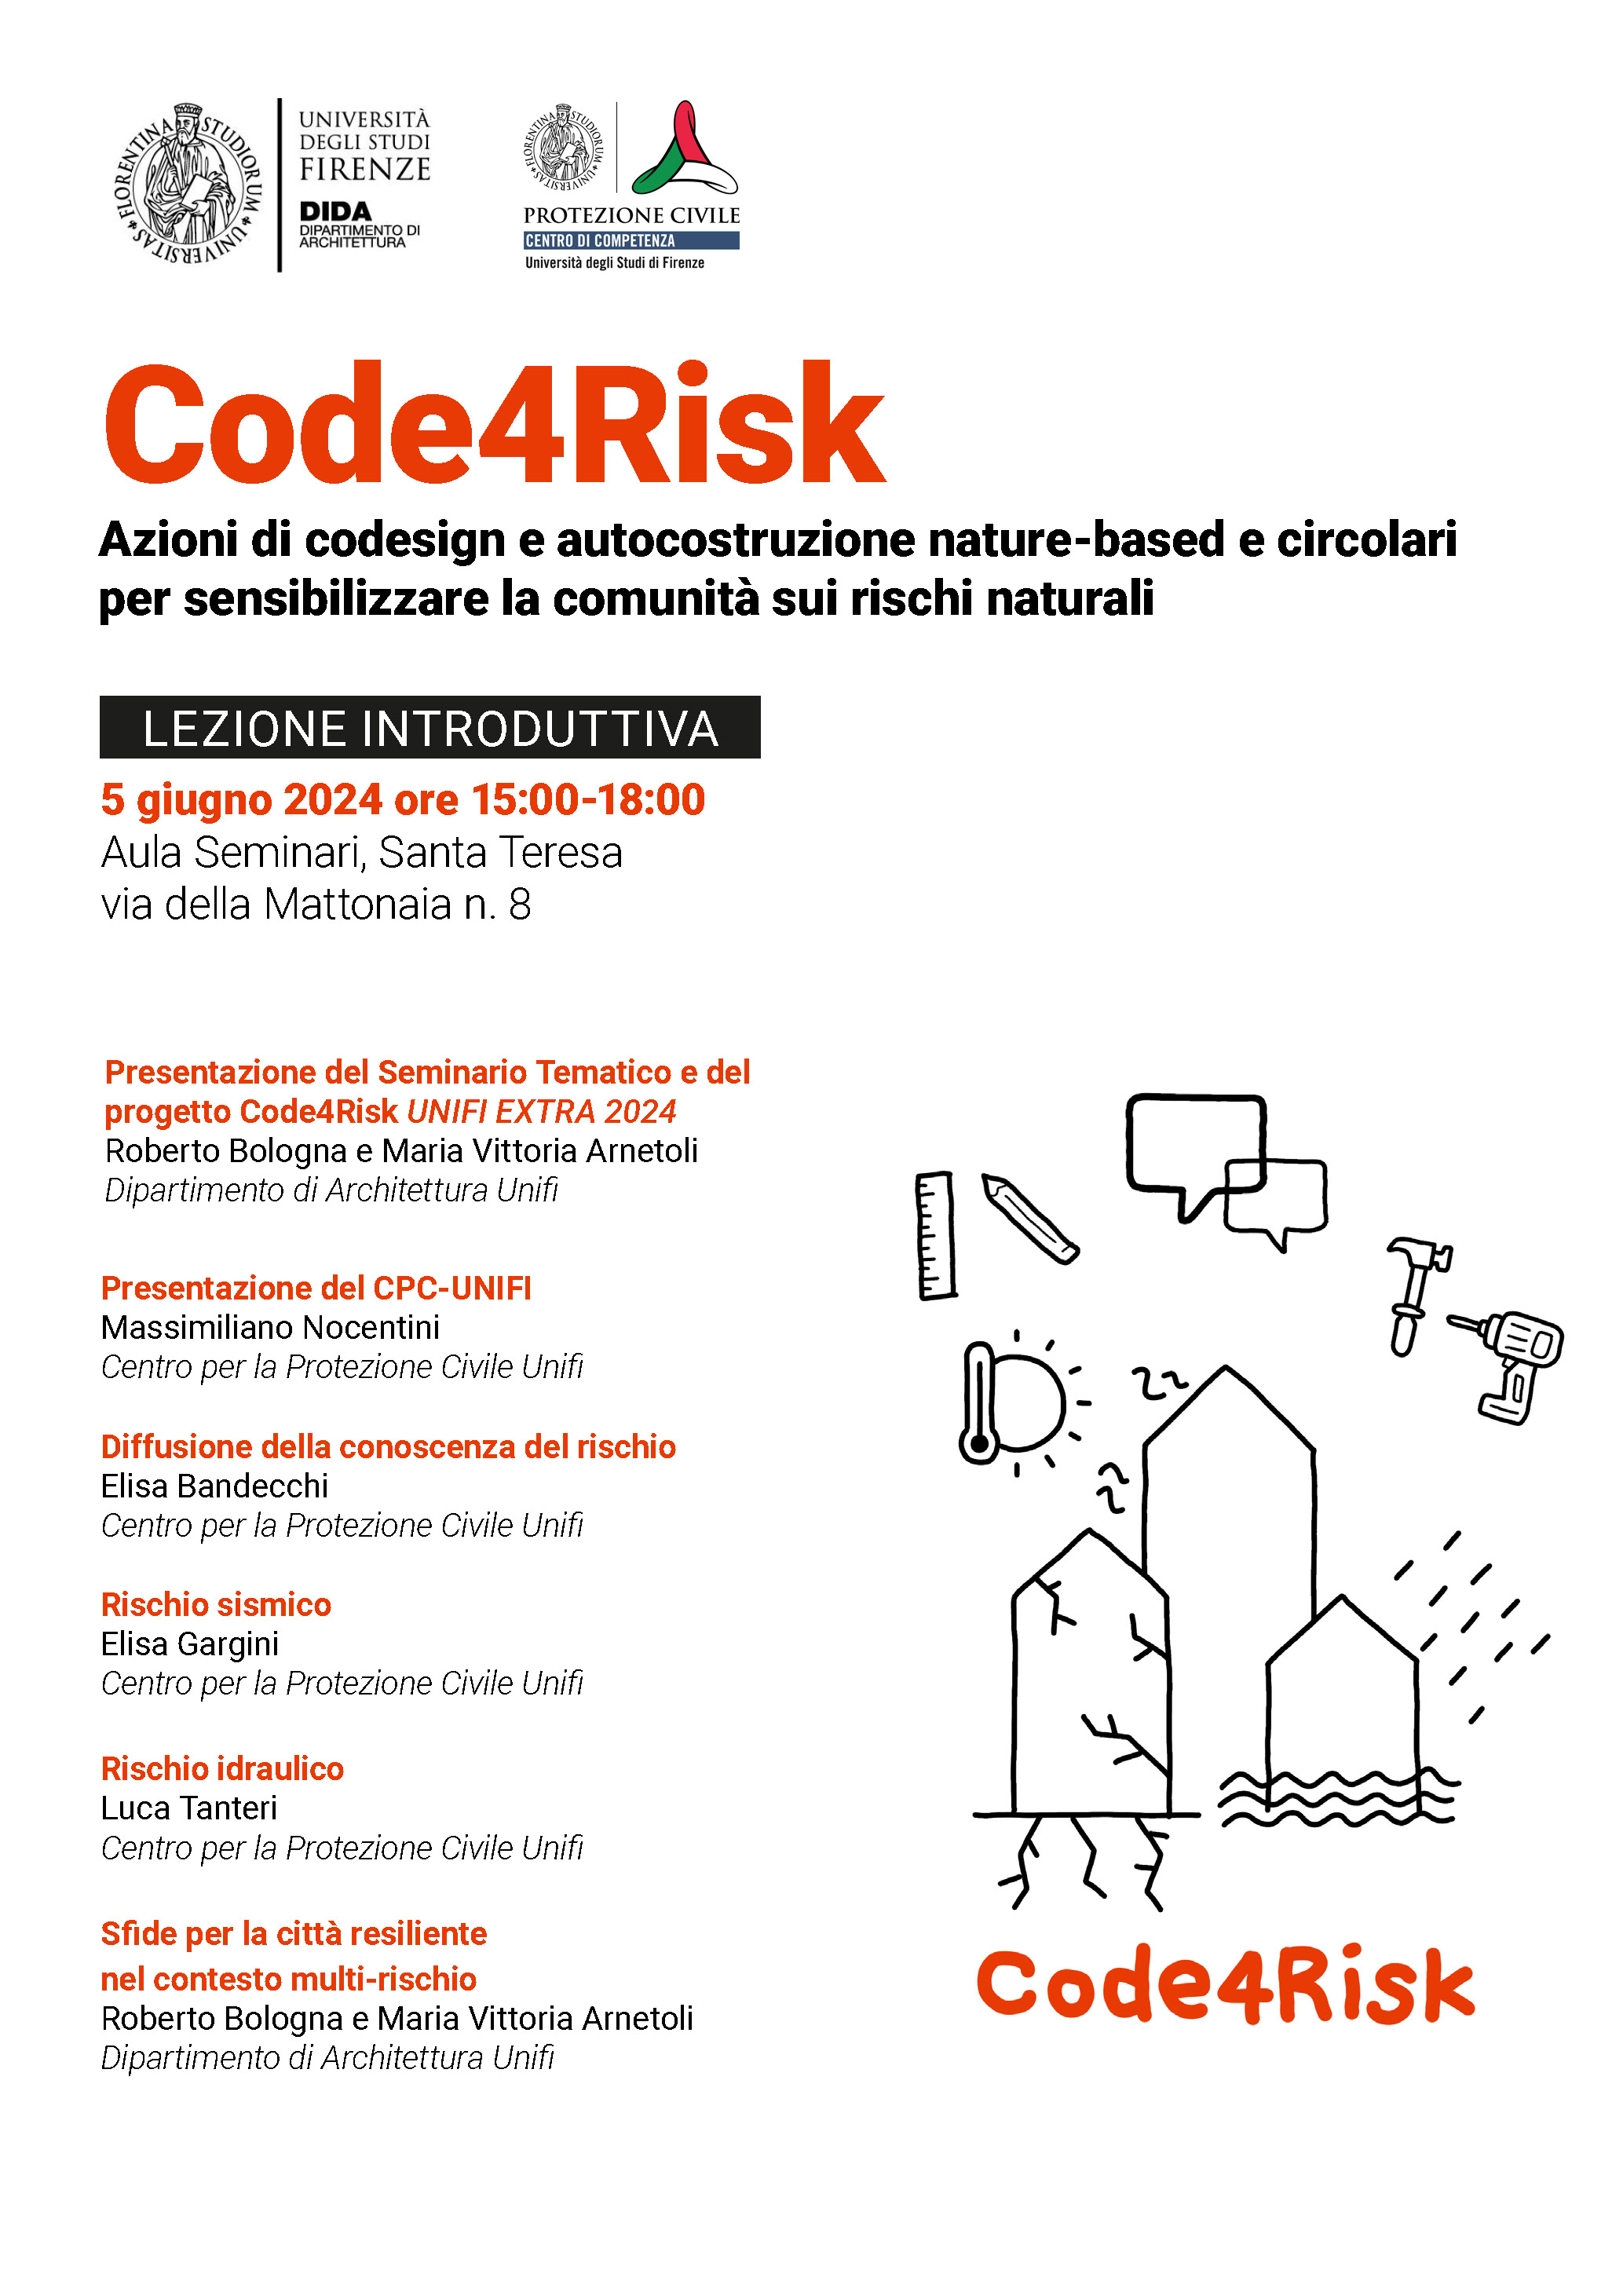 Azioni di codesign e autocostruzione nature-based e circolari per sensibilizzare la comunità sui rischi naturali